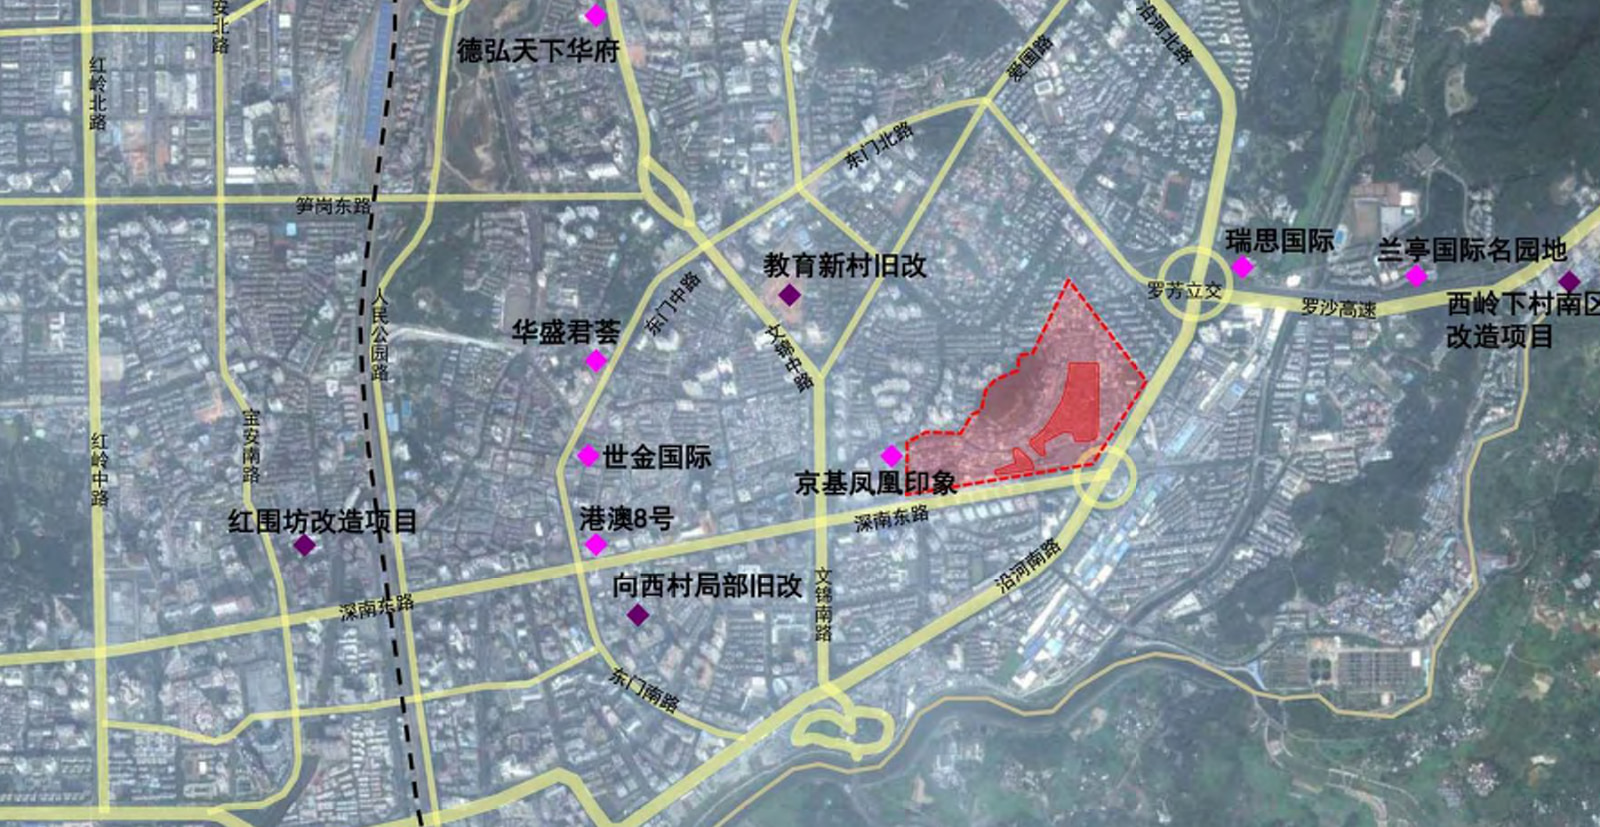 2007年,黄贝岭旧村改造纳入到《深圳市近期建设规划2007年度实施计划